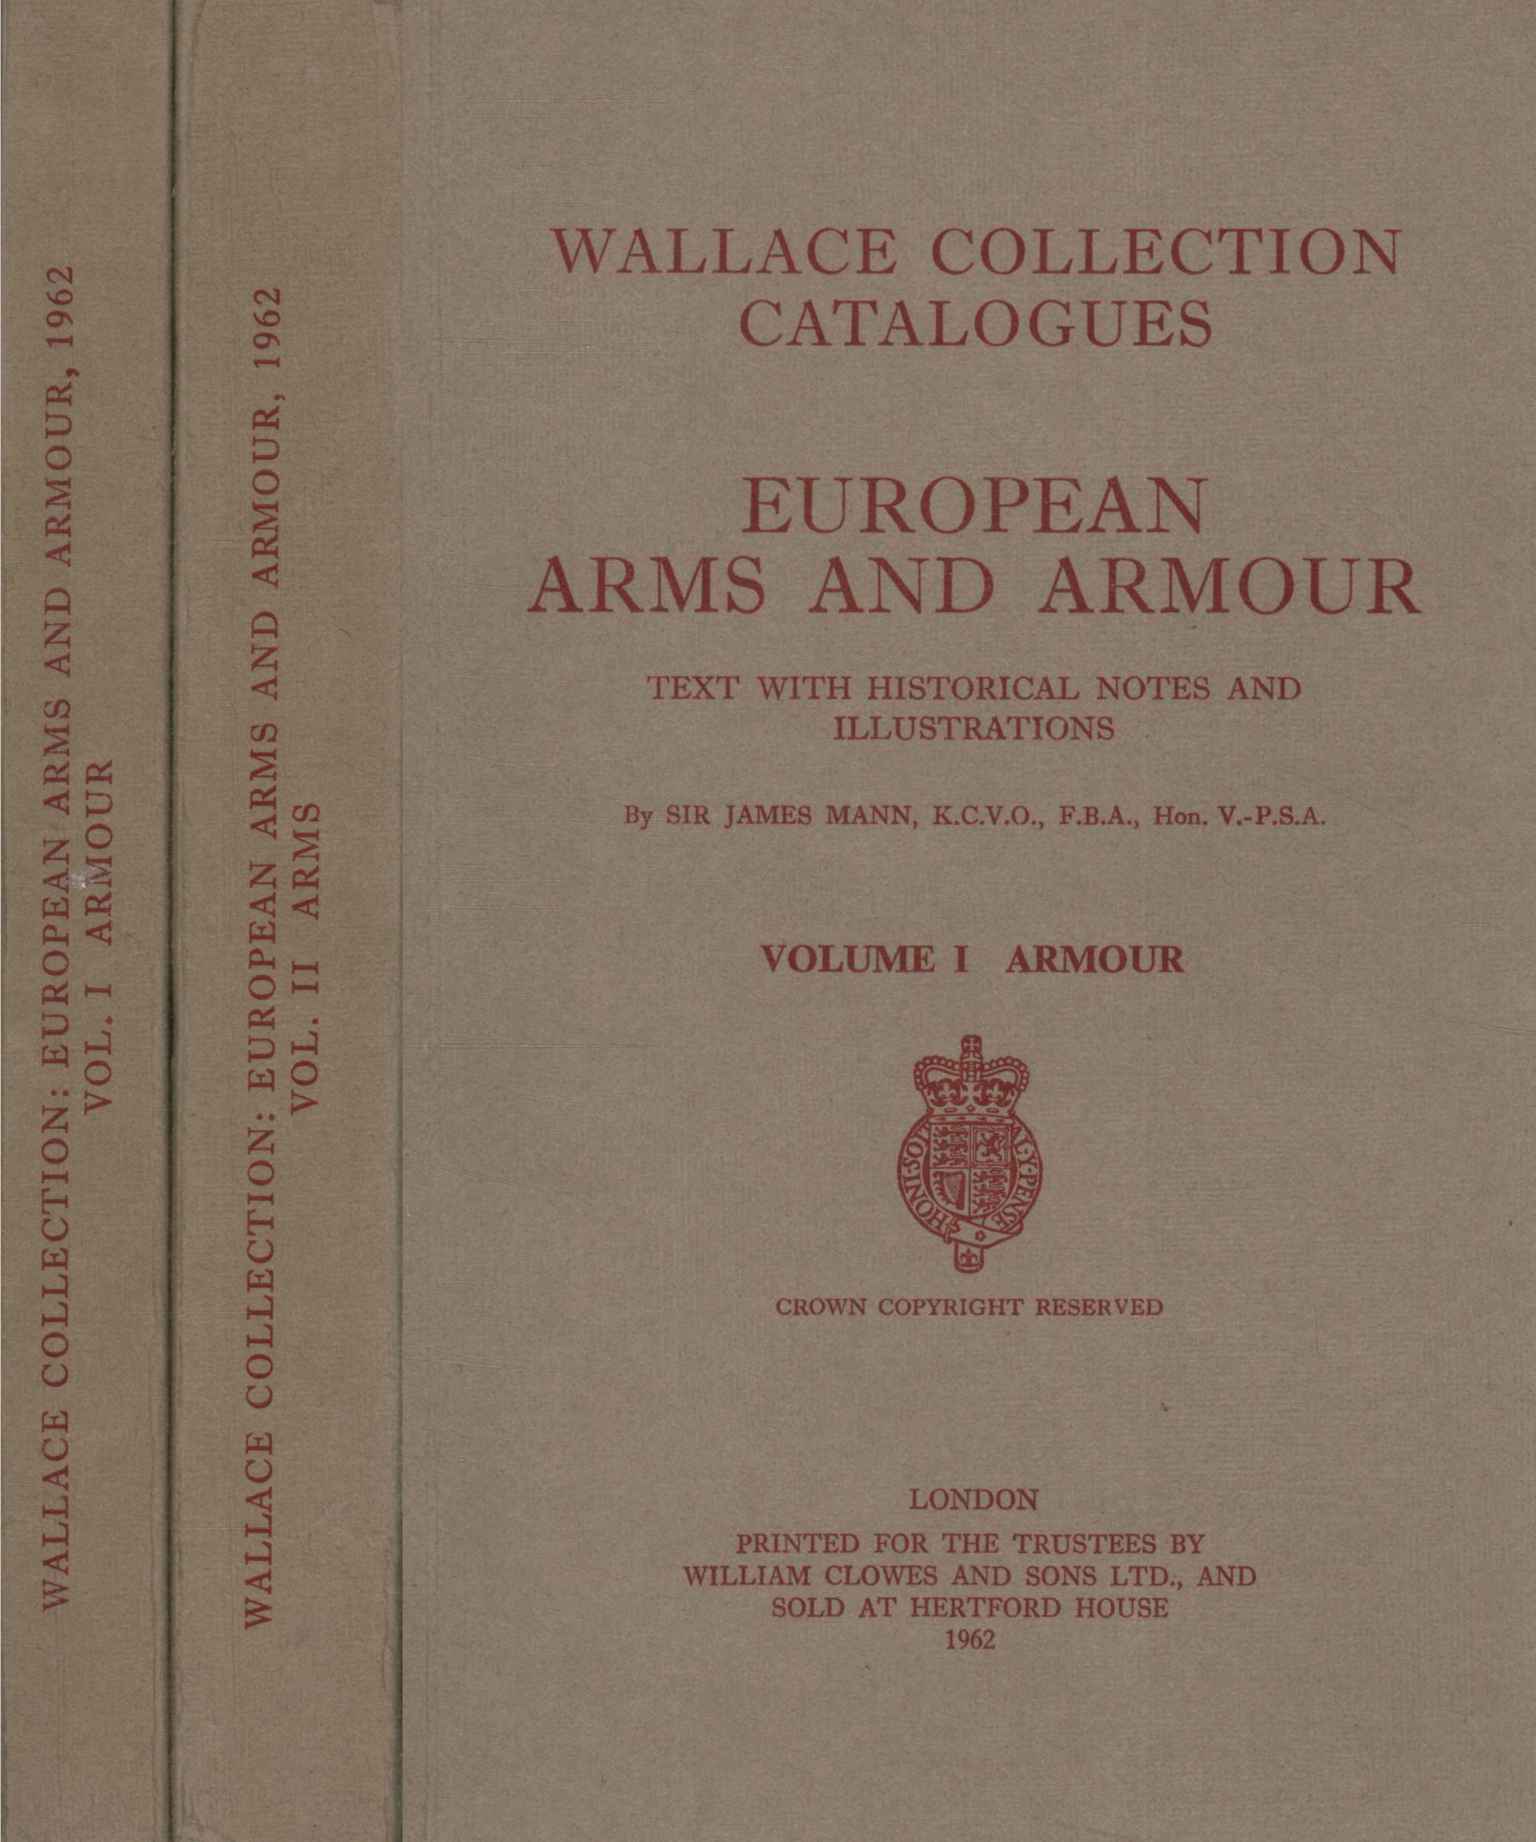 Catálogos de la colección Wallace: Ar europeo